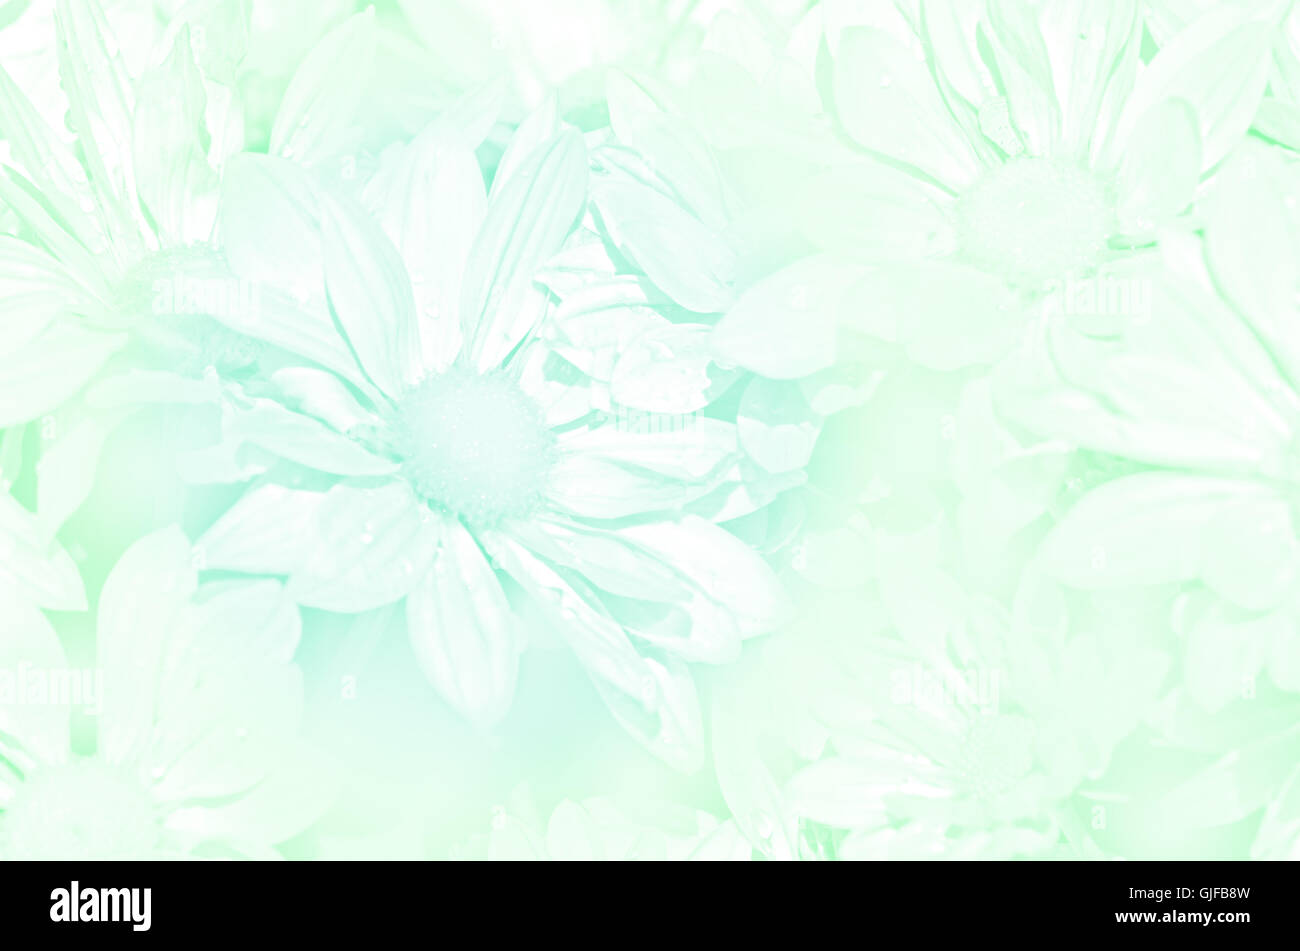 Fermé du type de pulvérisation de chrysanthème (Dendranthemum grandifflora) en tons pastel. Banque D'Images